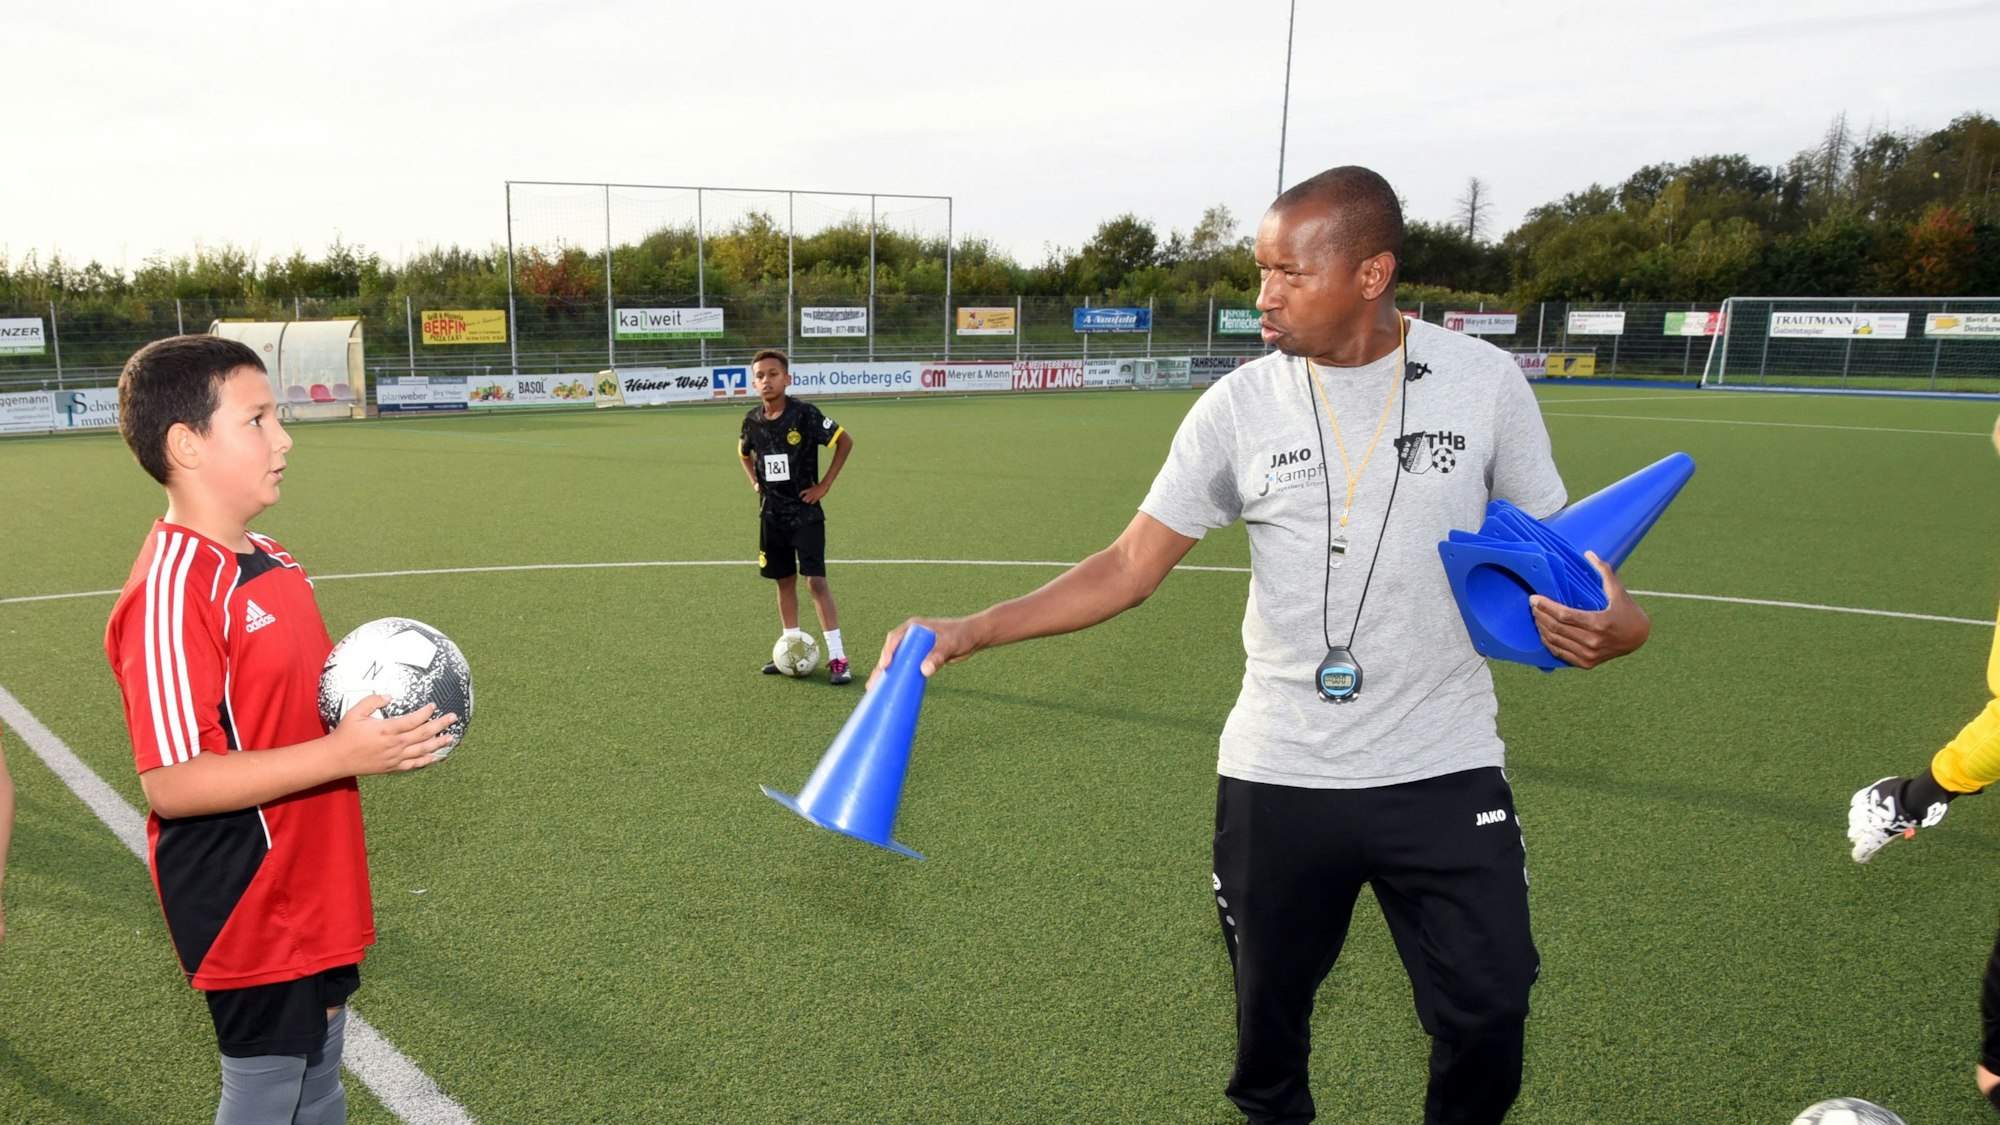 Abdoul Schwotzer Conde steht auf einem Fußballplatz und hält ein blaues Hütchen in der Hand, links von ihm steht ein Jugendlicher mit einem Fußball in den Händen.